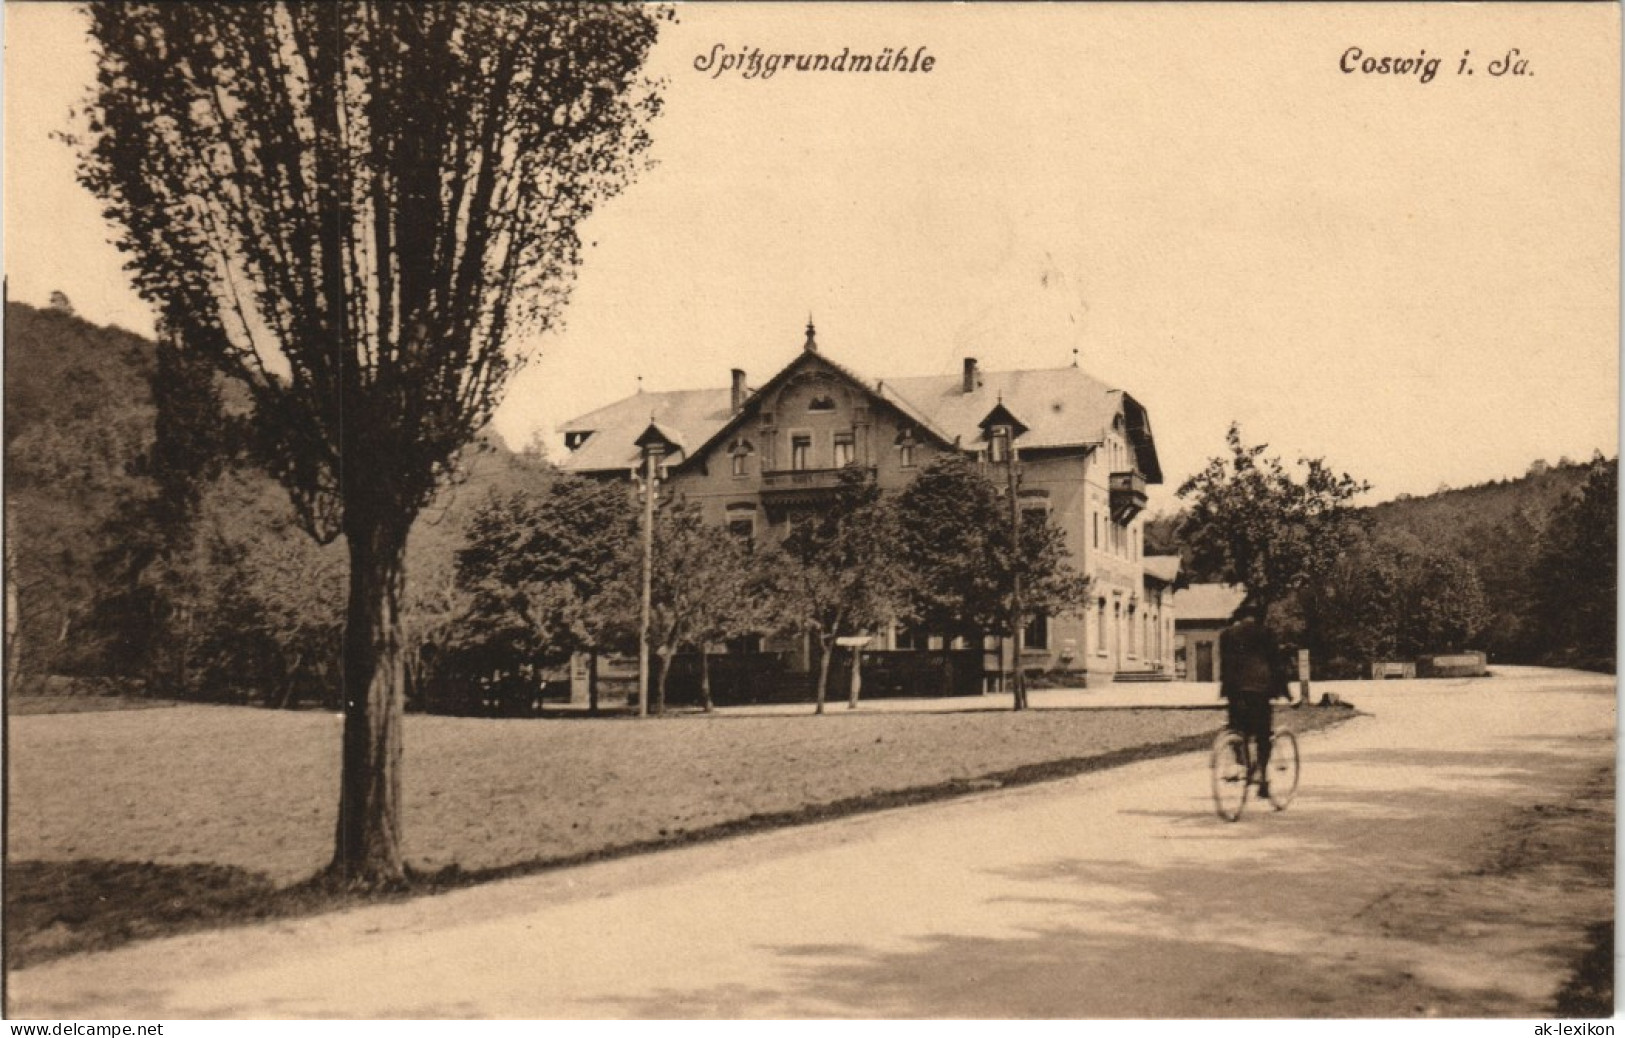 Ansichtskarte Coswig (Sachsen) Fahrradfahrer An Der Spitzgrundmühle 1913 - Coswig